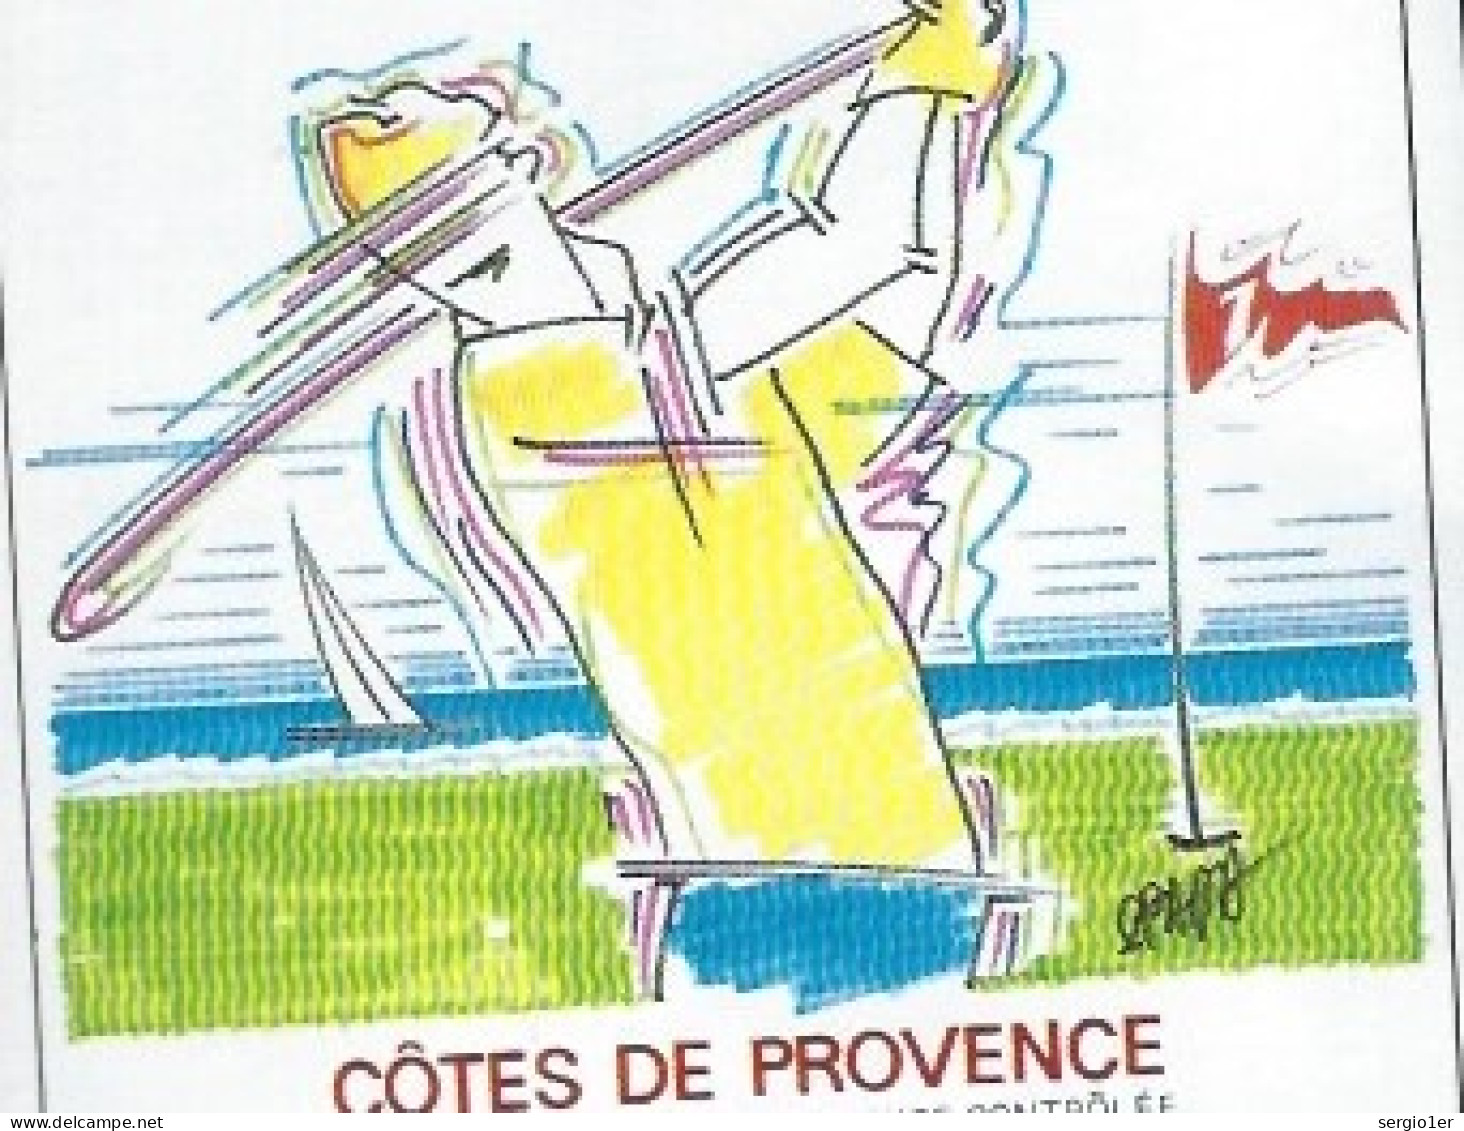 Etiquette Vin  Côtes De Provence  La Cuvée Du Golfeur Domaine Des Myrtes  Barnarous La Londe Des Maures - Vino Rosado